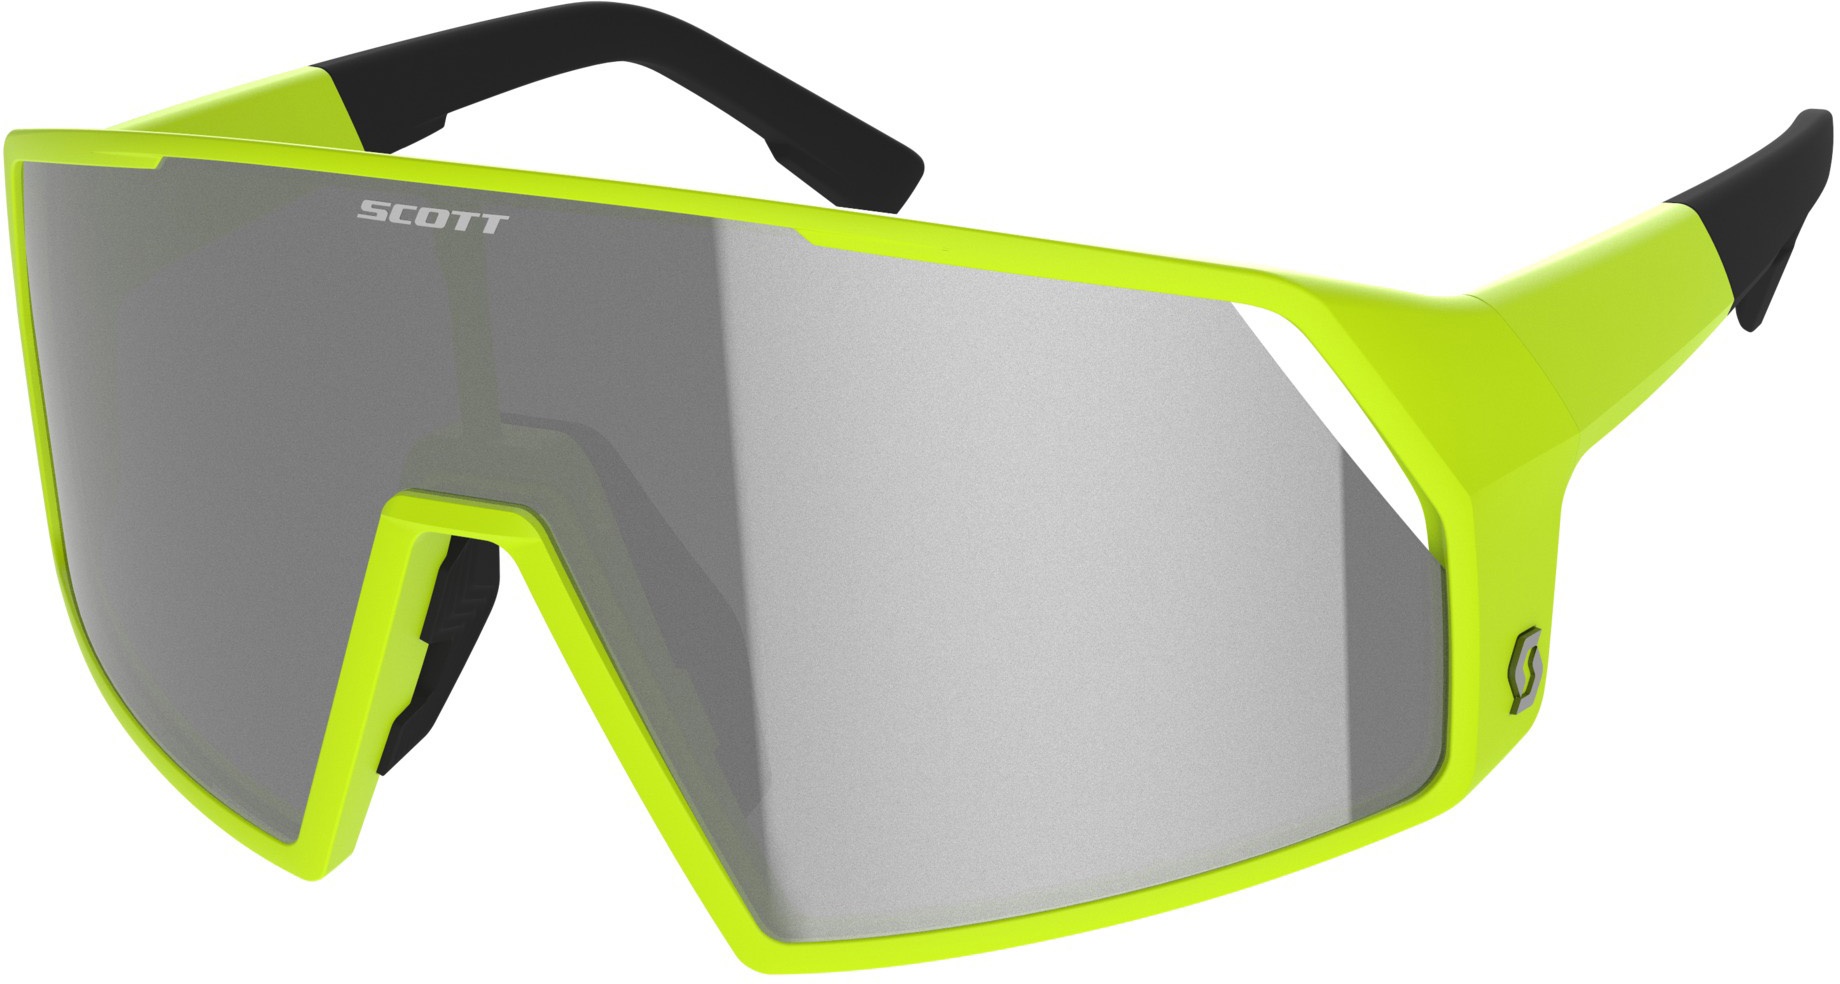  - Scott Pro Shield LS Cykelbrille - Fotokromisk - Gul